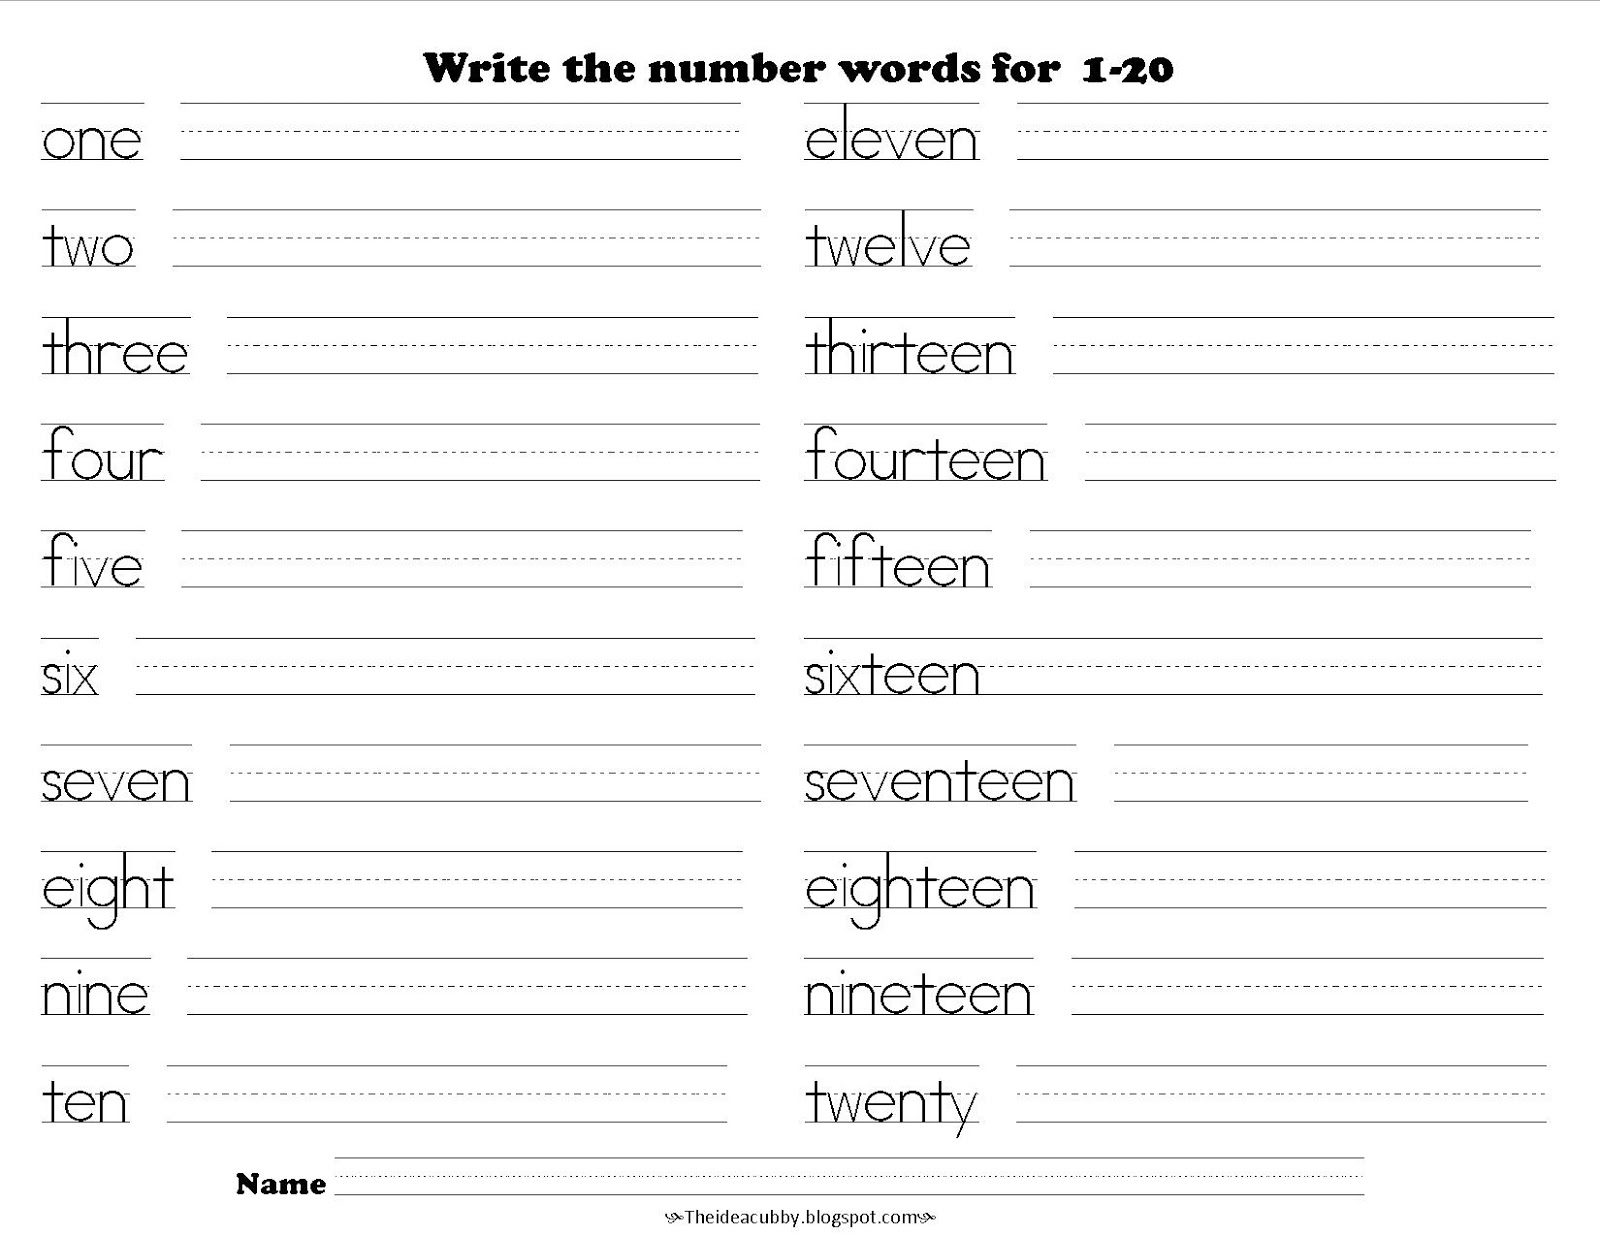 number-tracing-11-20-worksheet-digital-numbers-11-20-worksheets-teen